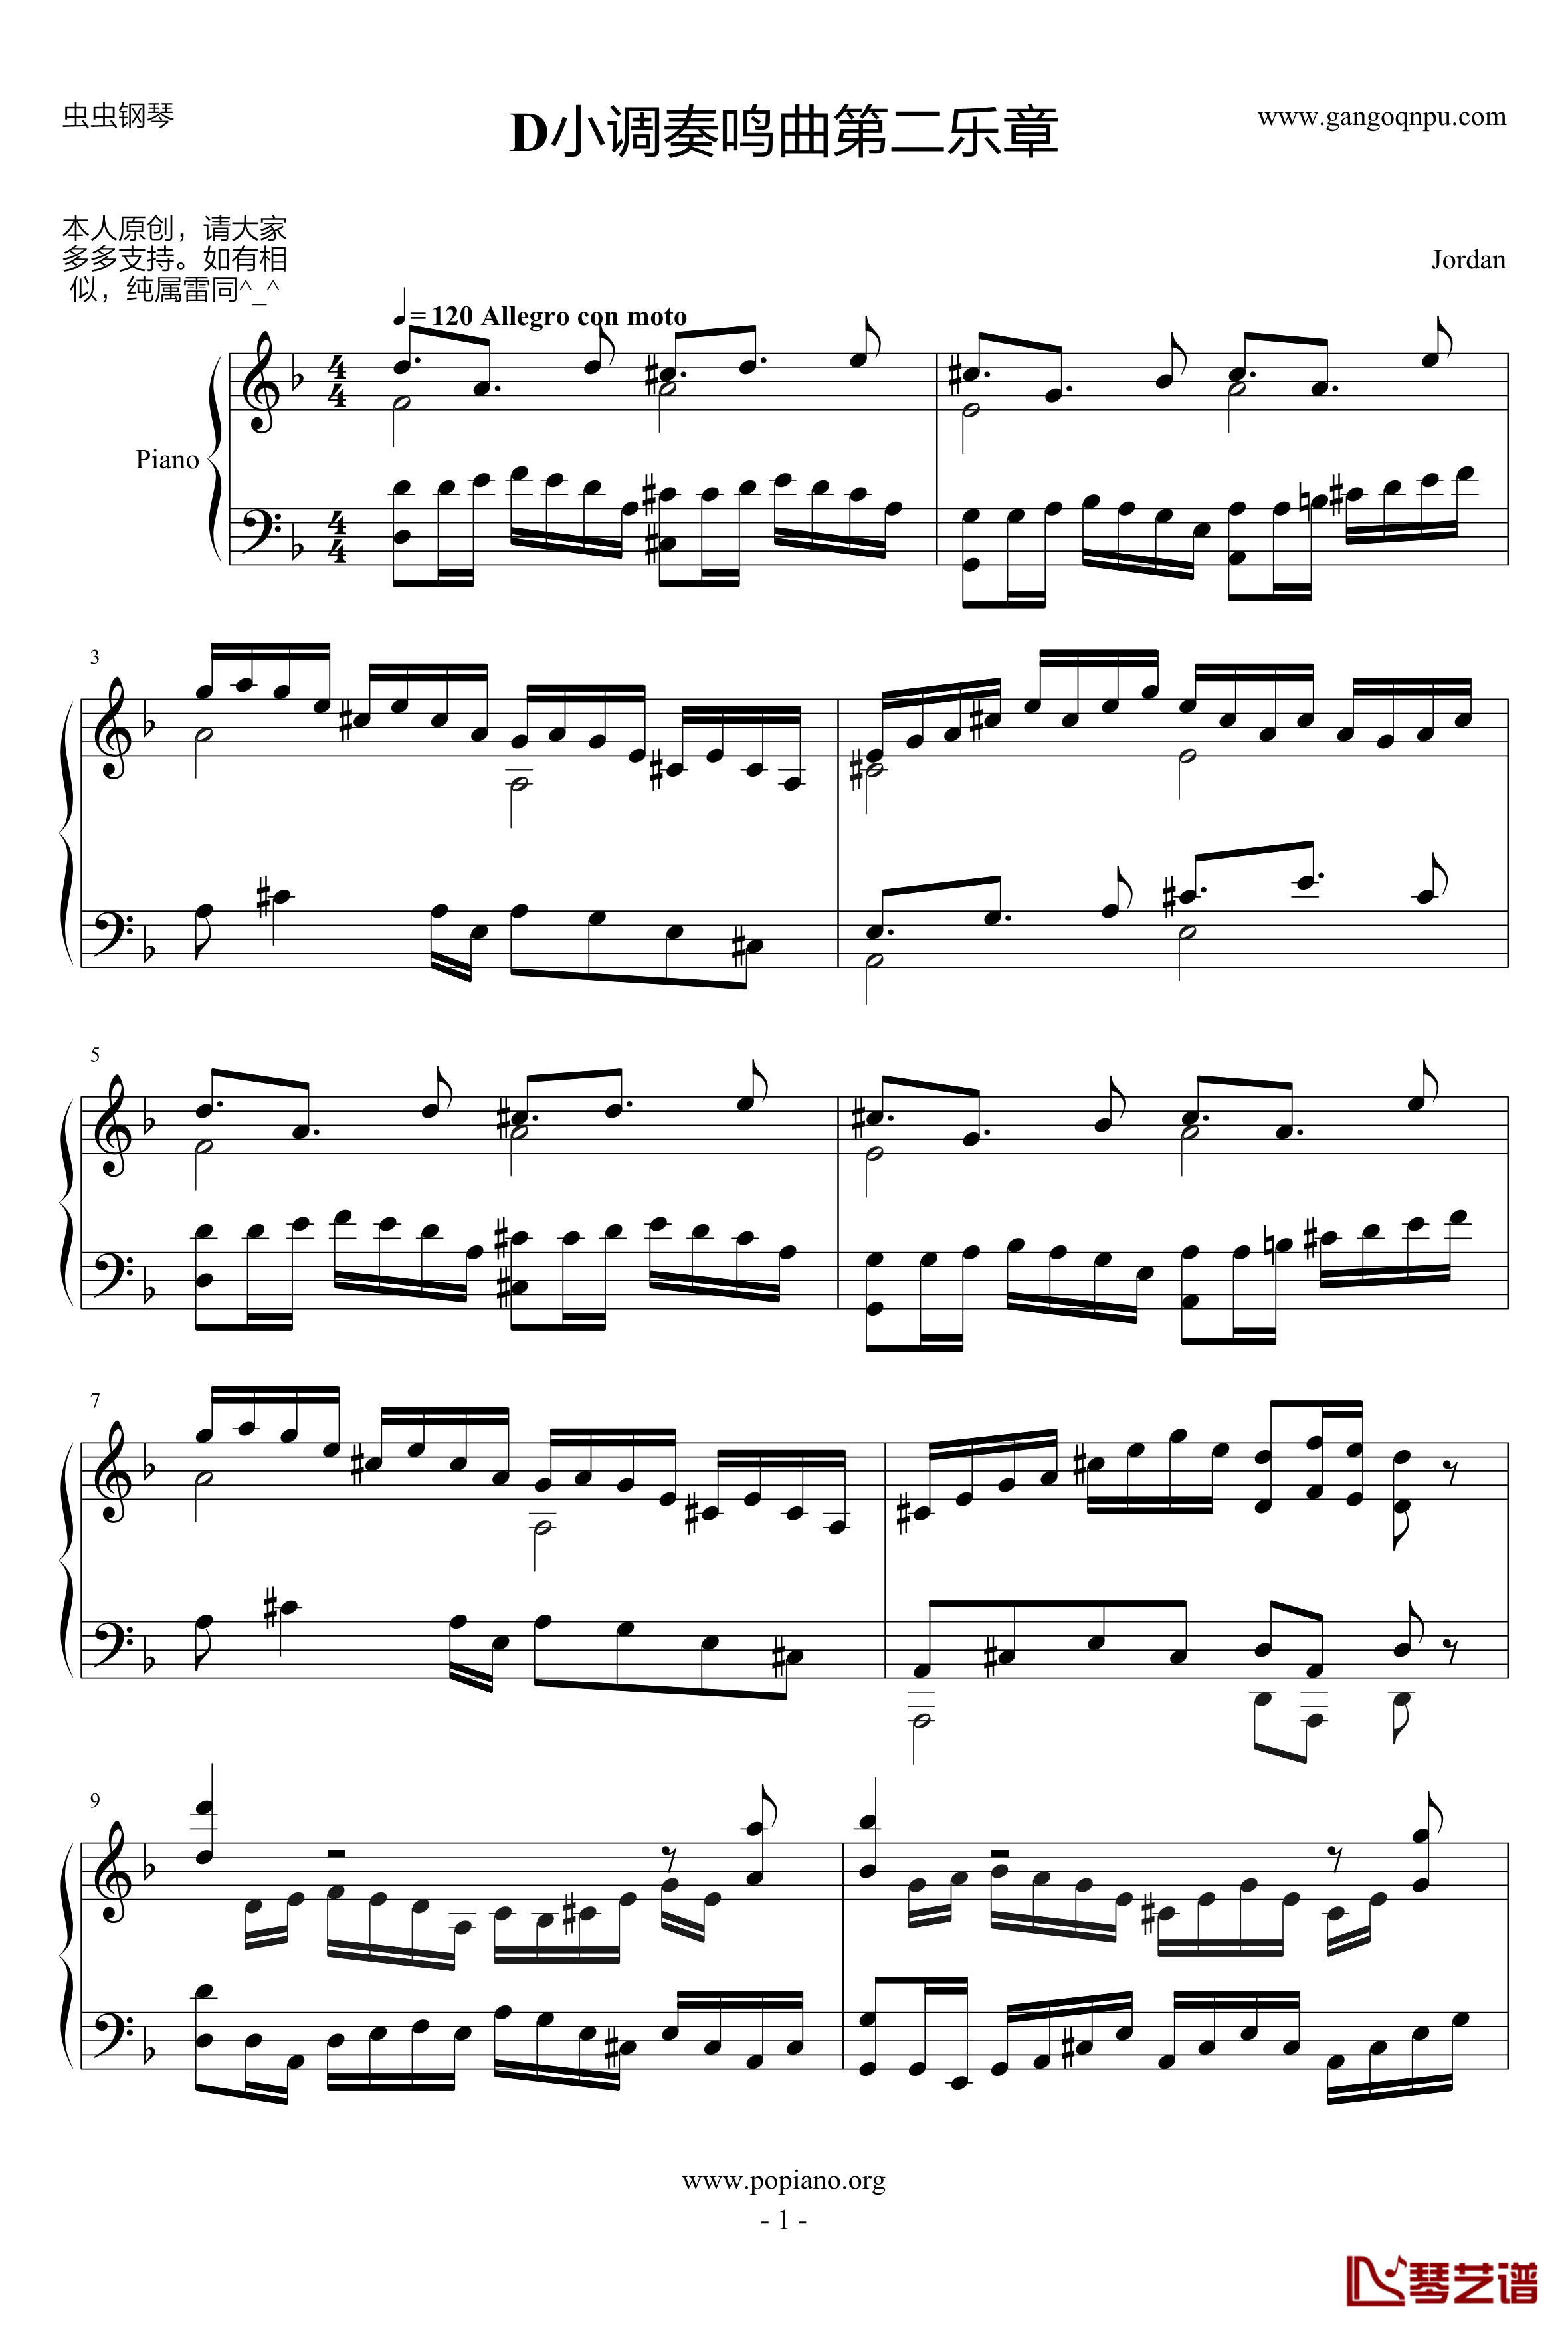 D小调小奏鸣曲钢琴谱-Jordan_Lin1